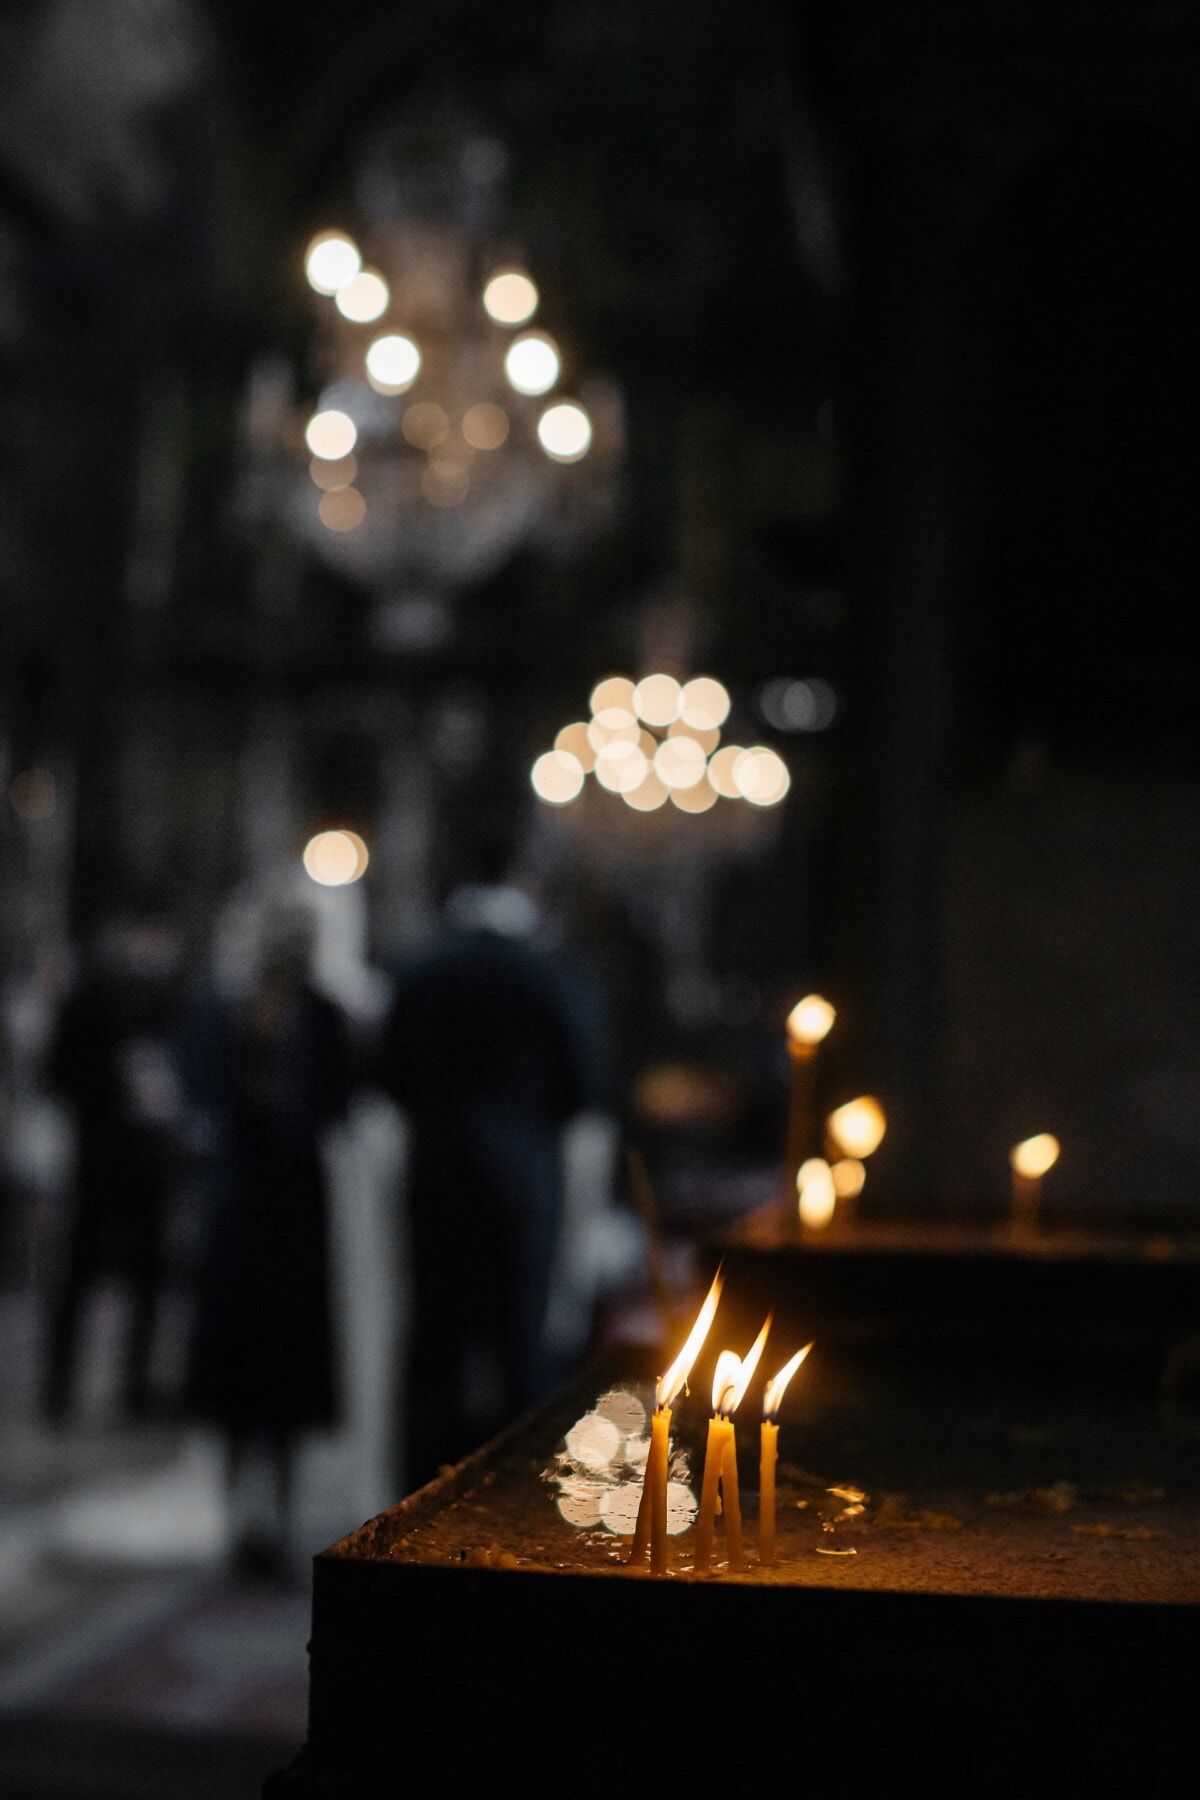  Trauer Hintergrundbild 1200x1800. Kostenlose Bild: Trauer, Trauer, Kirche, Dunkelheit, Kerzen, Flamme, Candle Light, Traurigkeit, Kerze, Licht